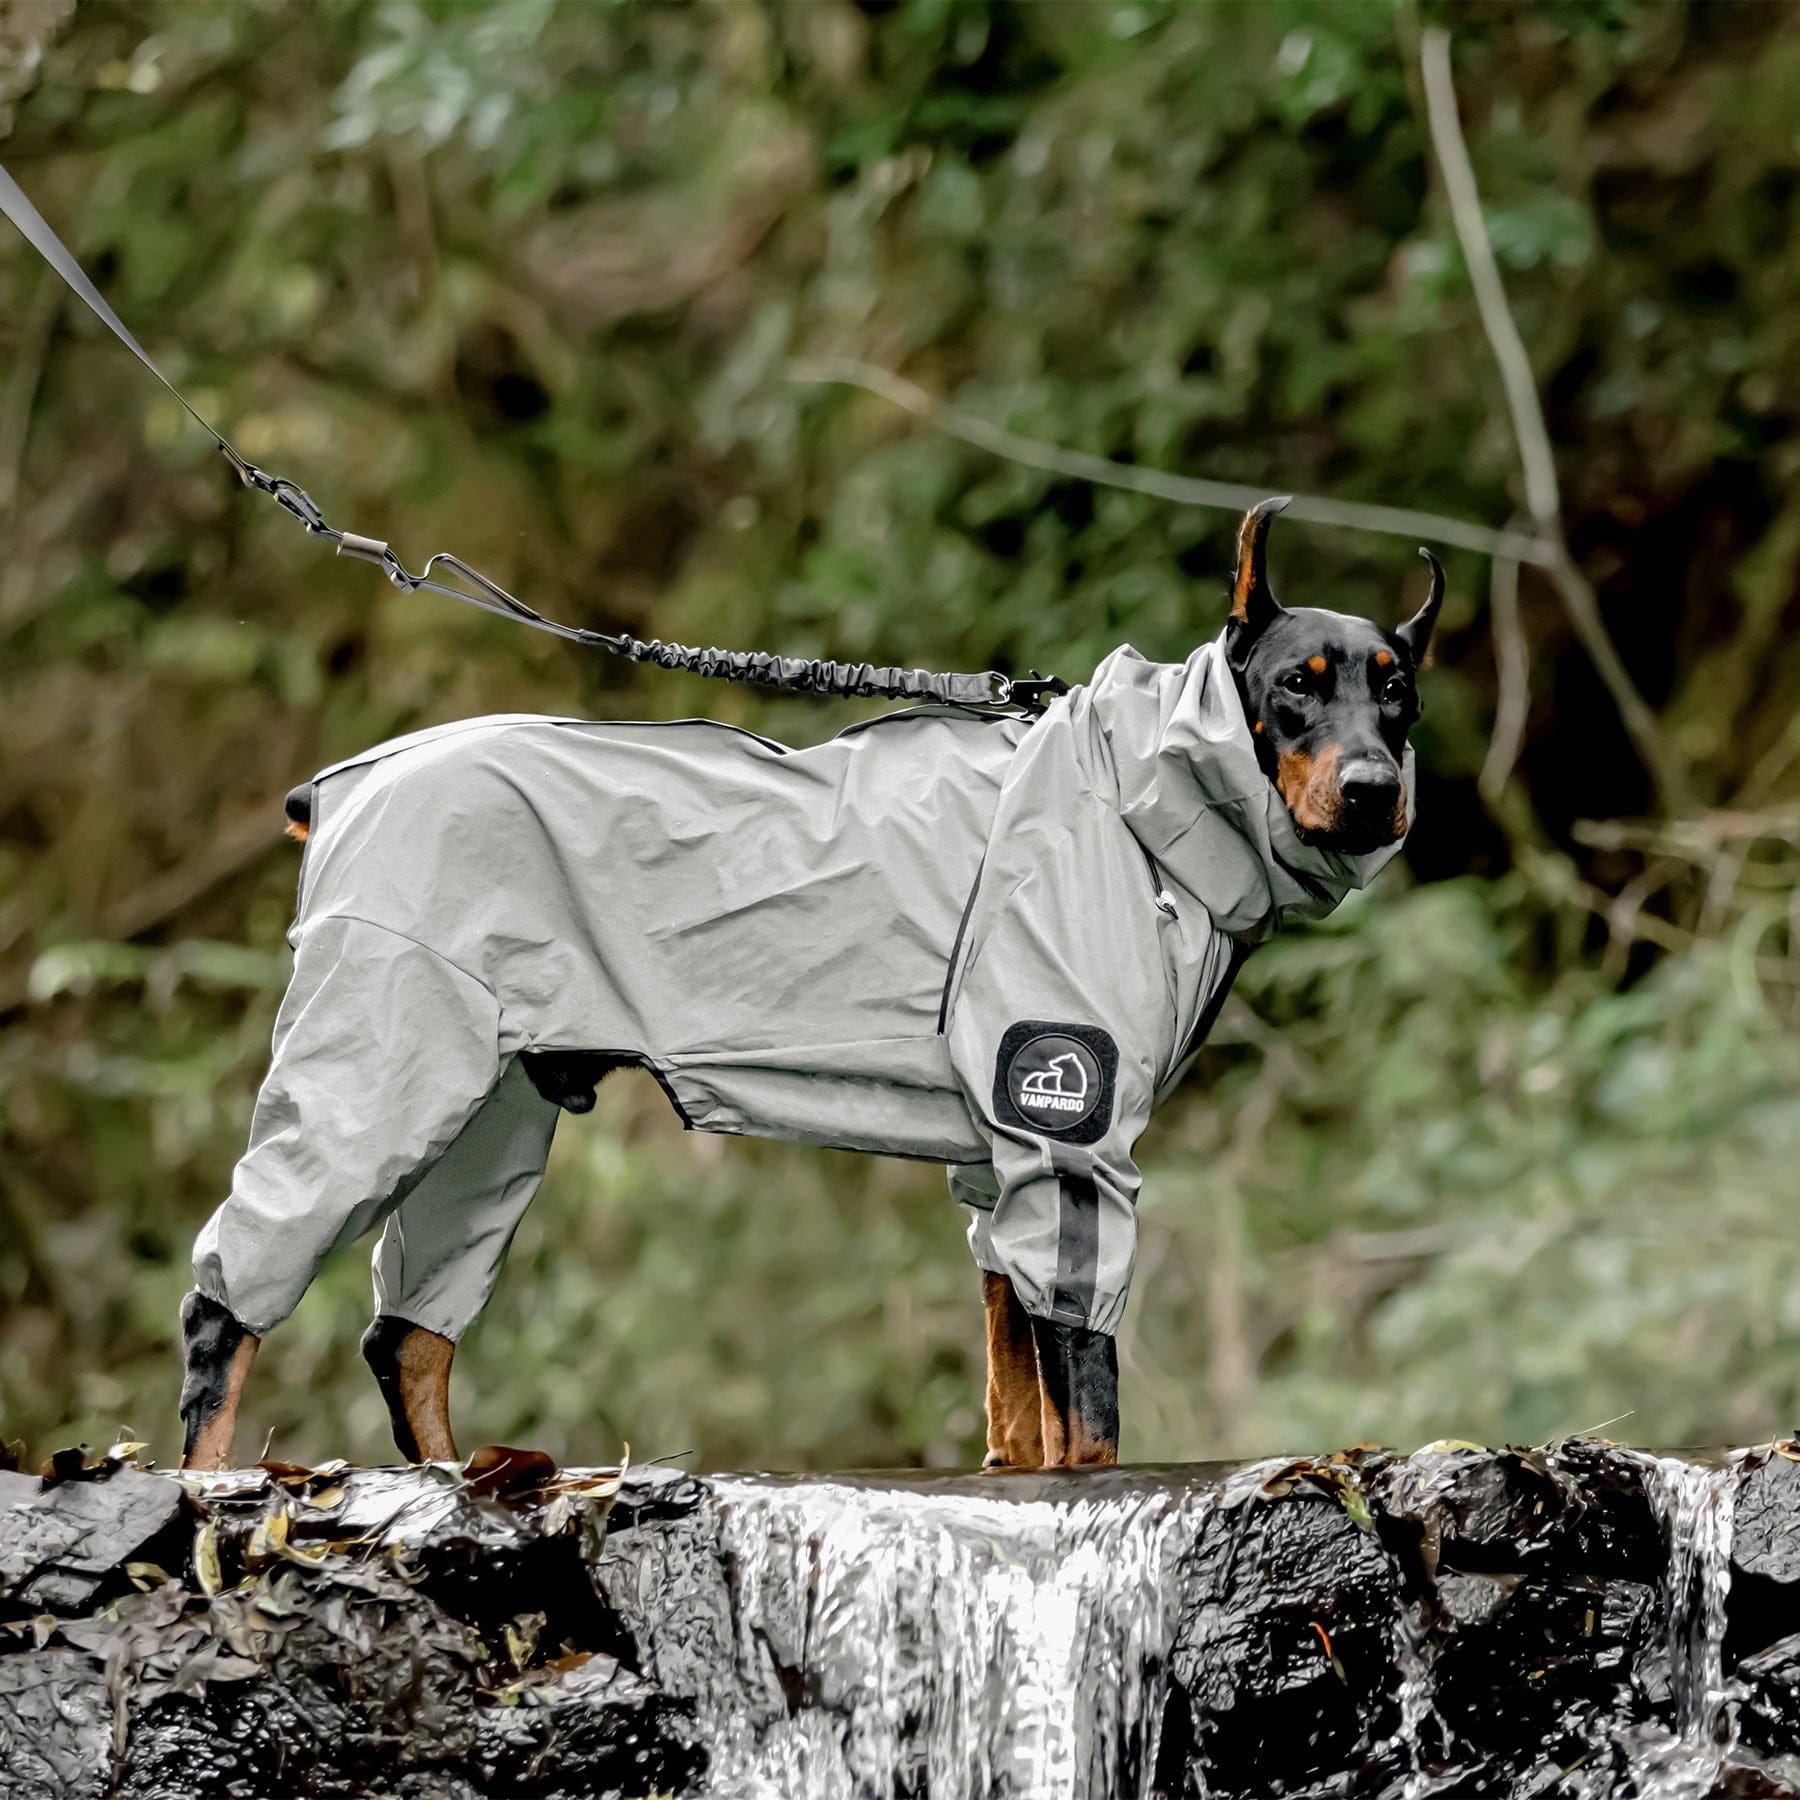 Dog raincoat